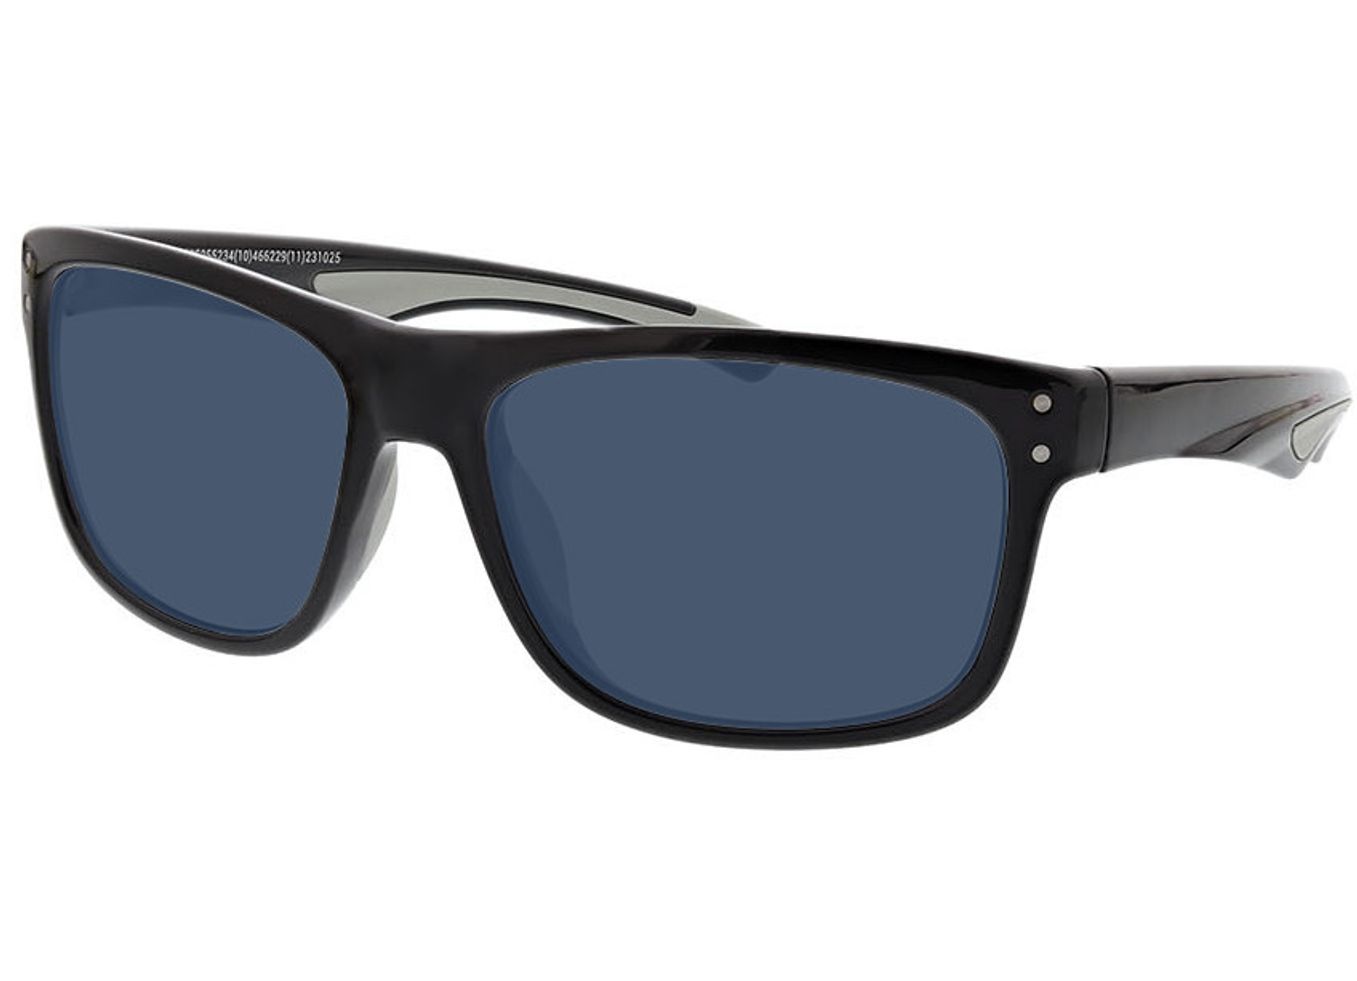 Pace - schwarz/grau Sonnenbrille ohne Sehstärke, Vollrand, Rechteckig von Active by Brille24